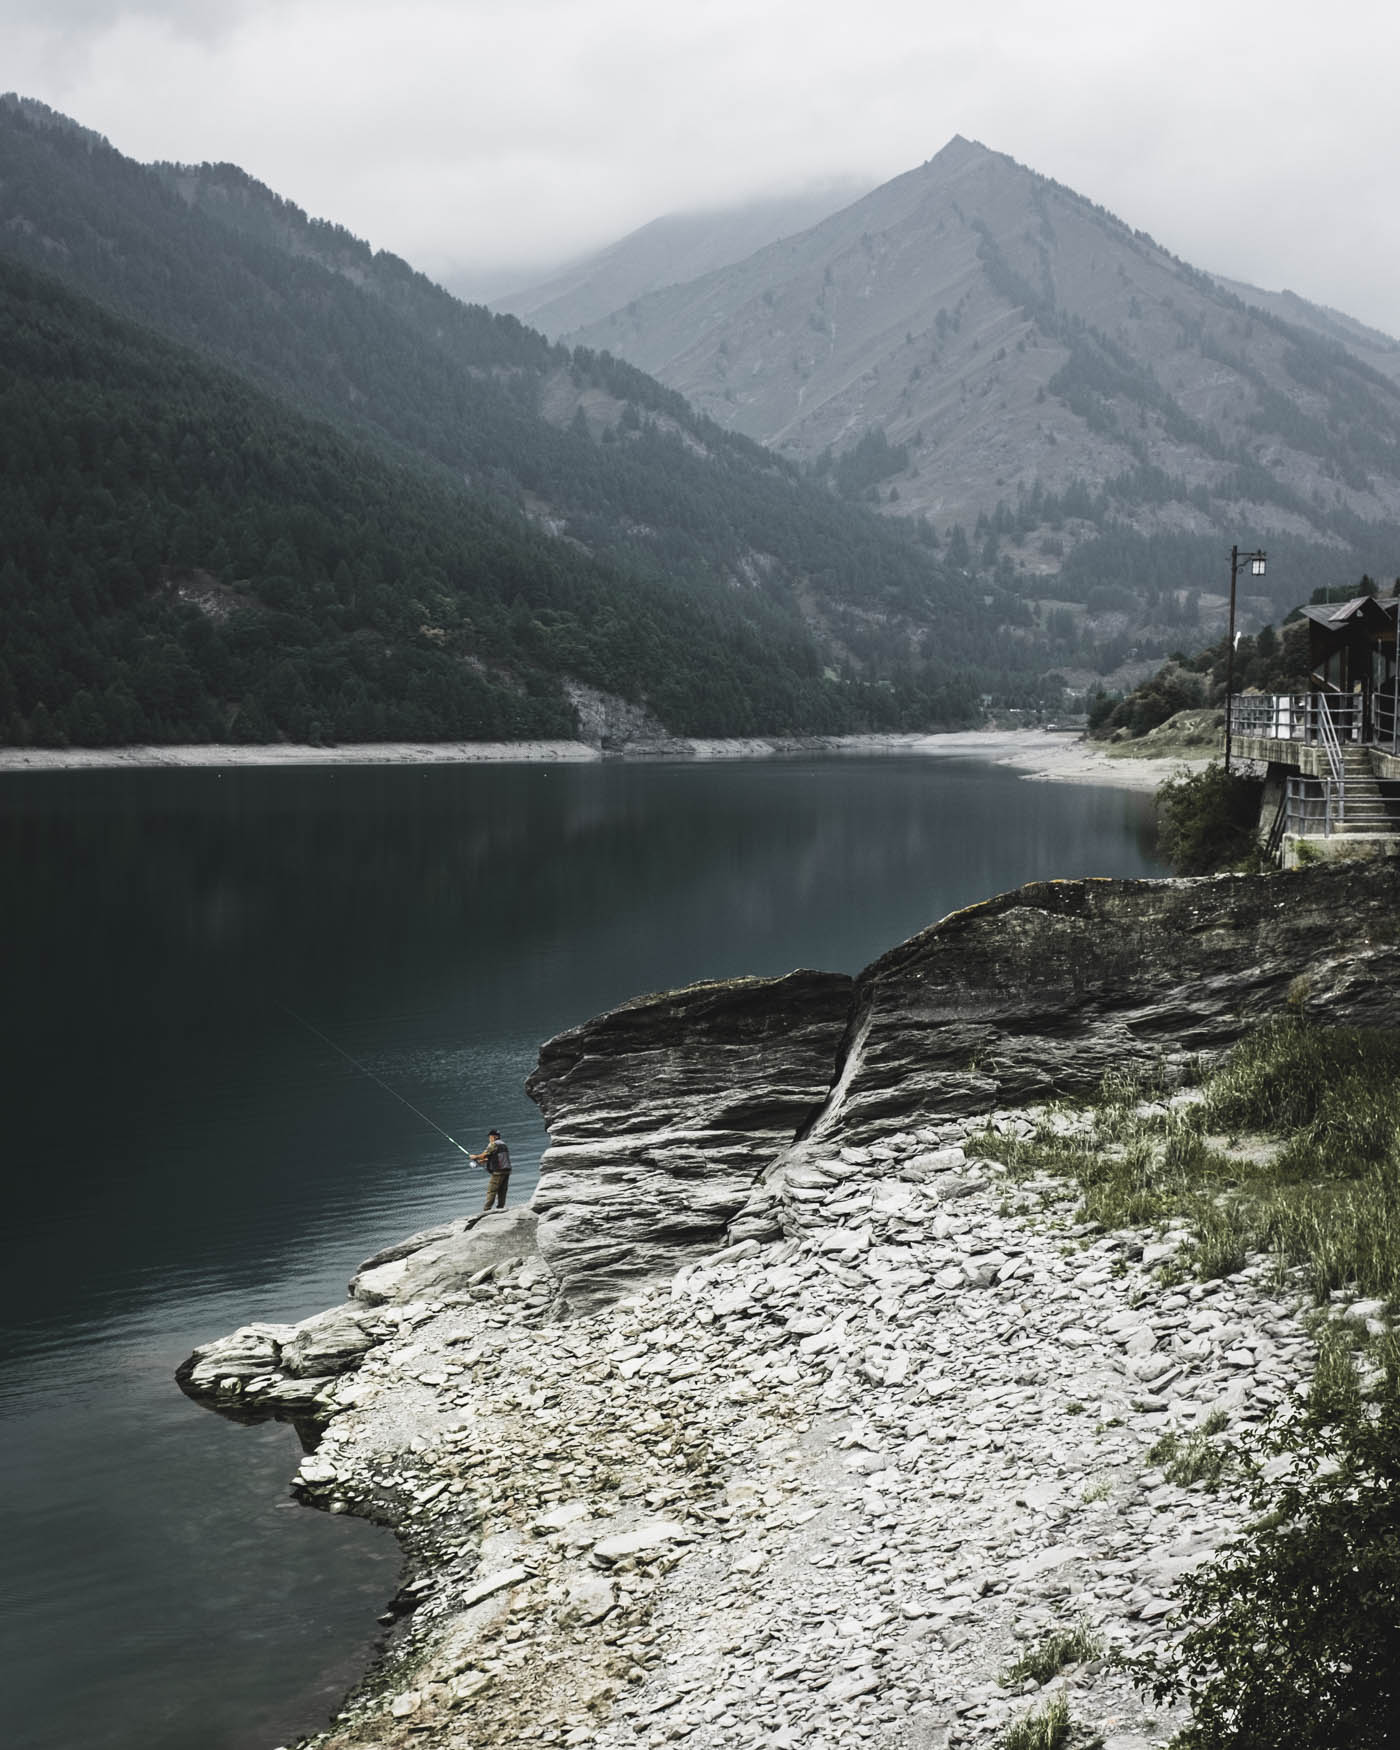 The artificial reservoir Lago di Castello in Italy